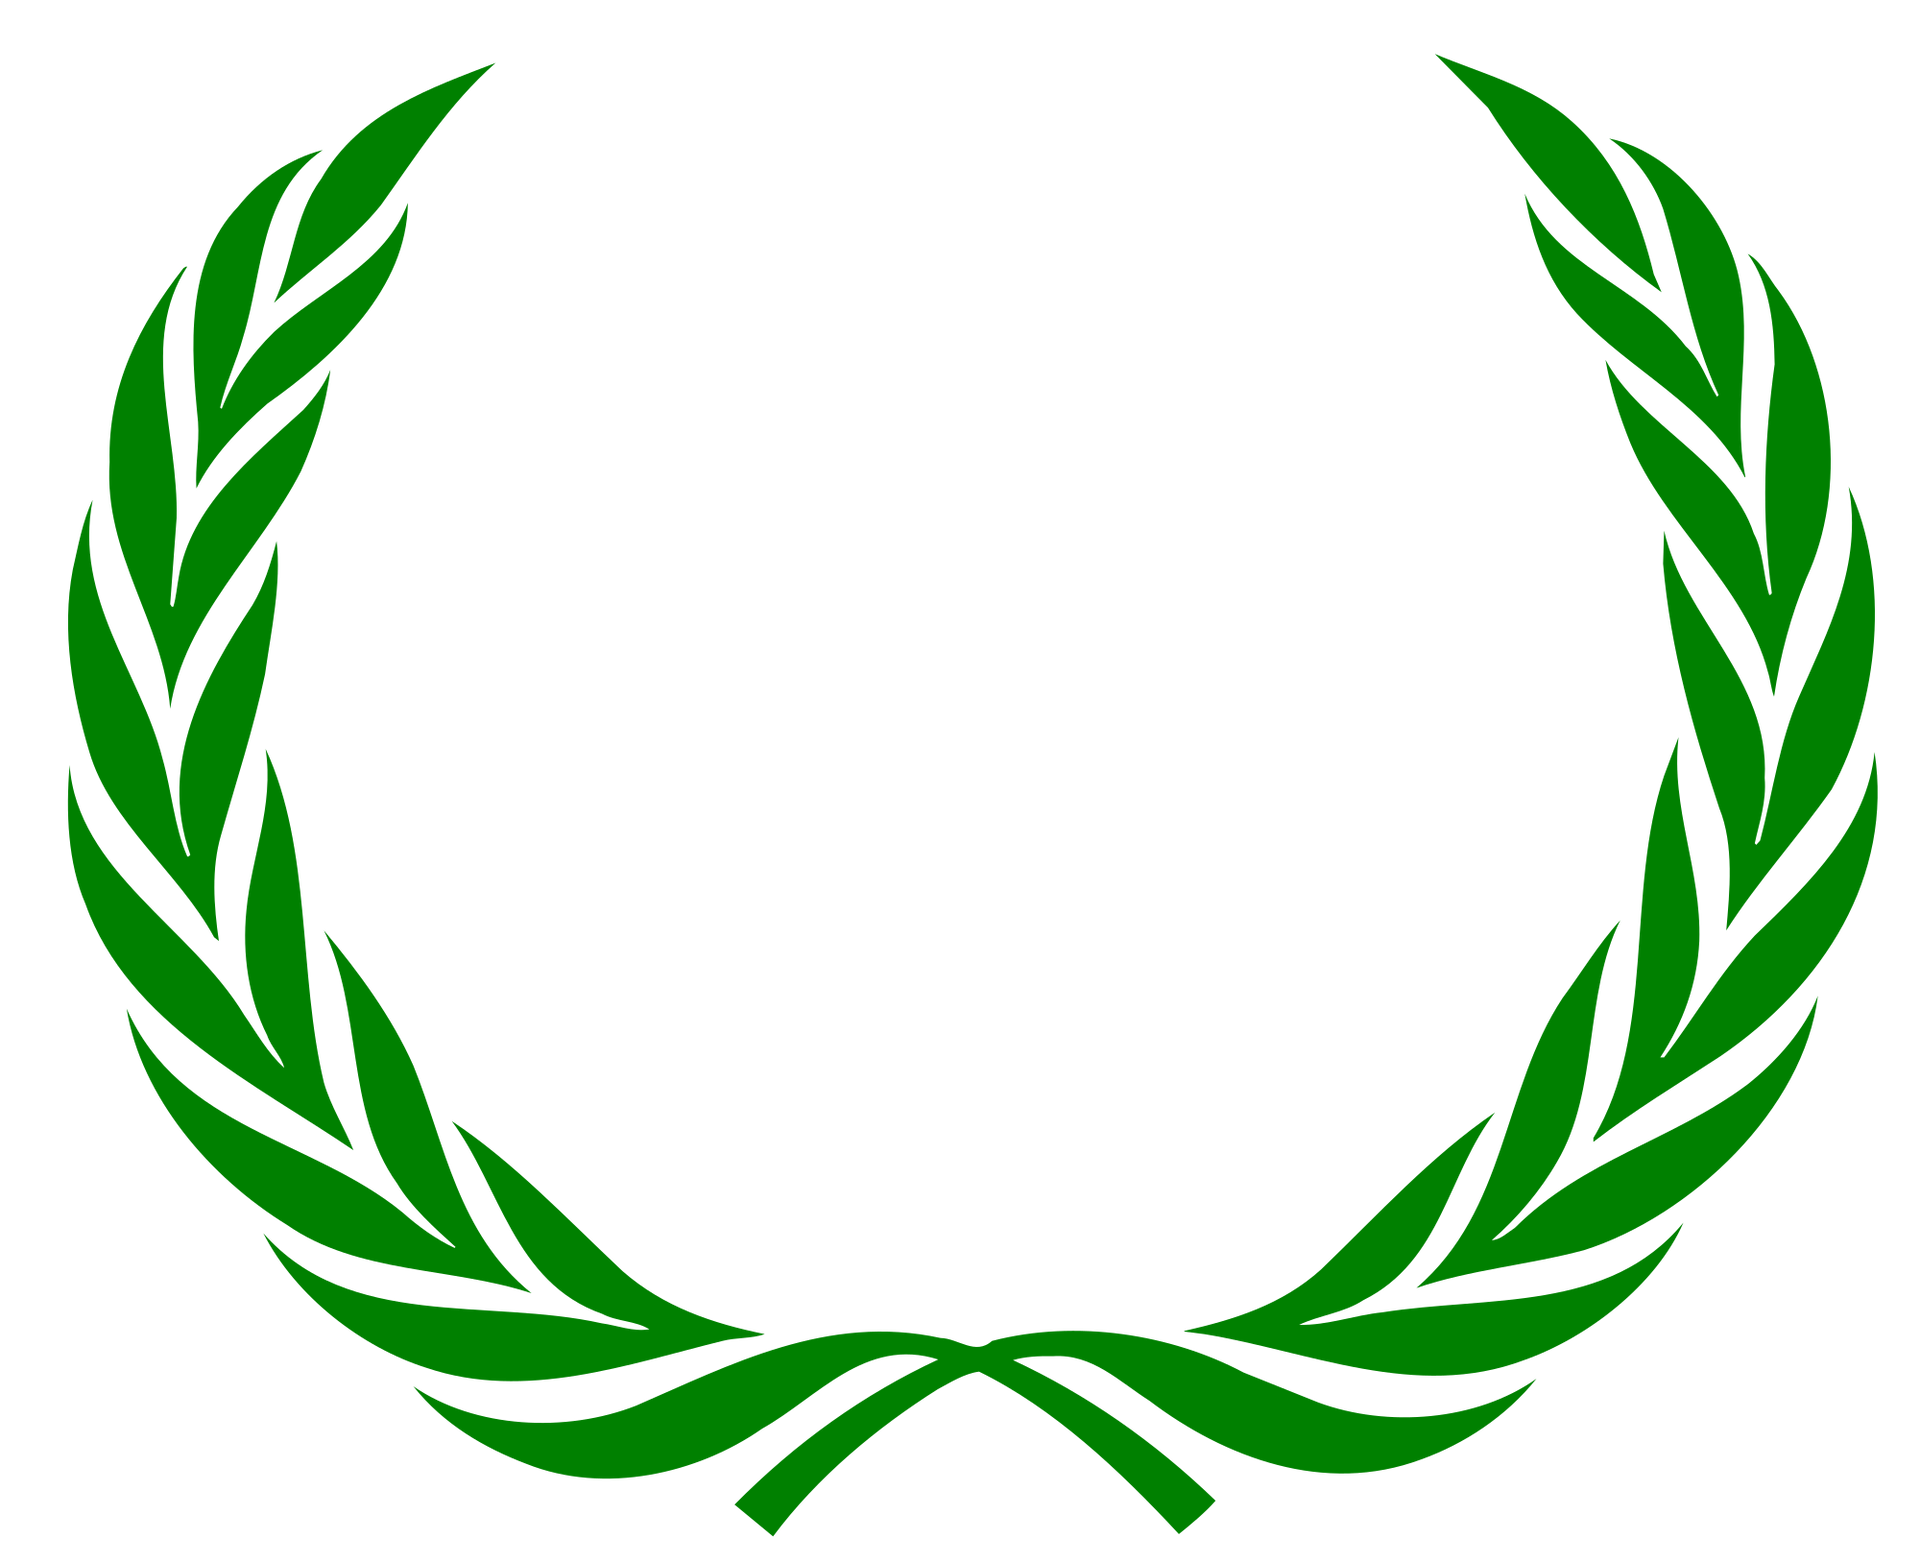 Zdjęcie przedstawia zielony laur olimpijski.